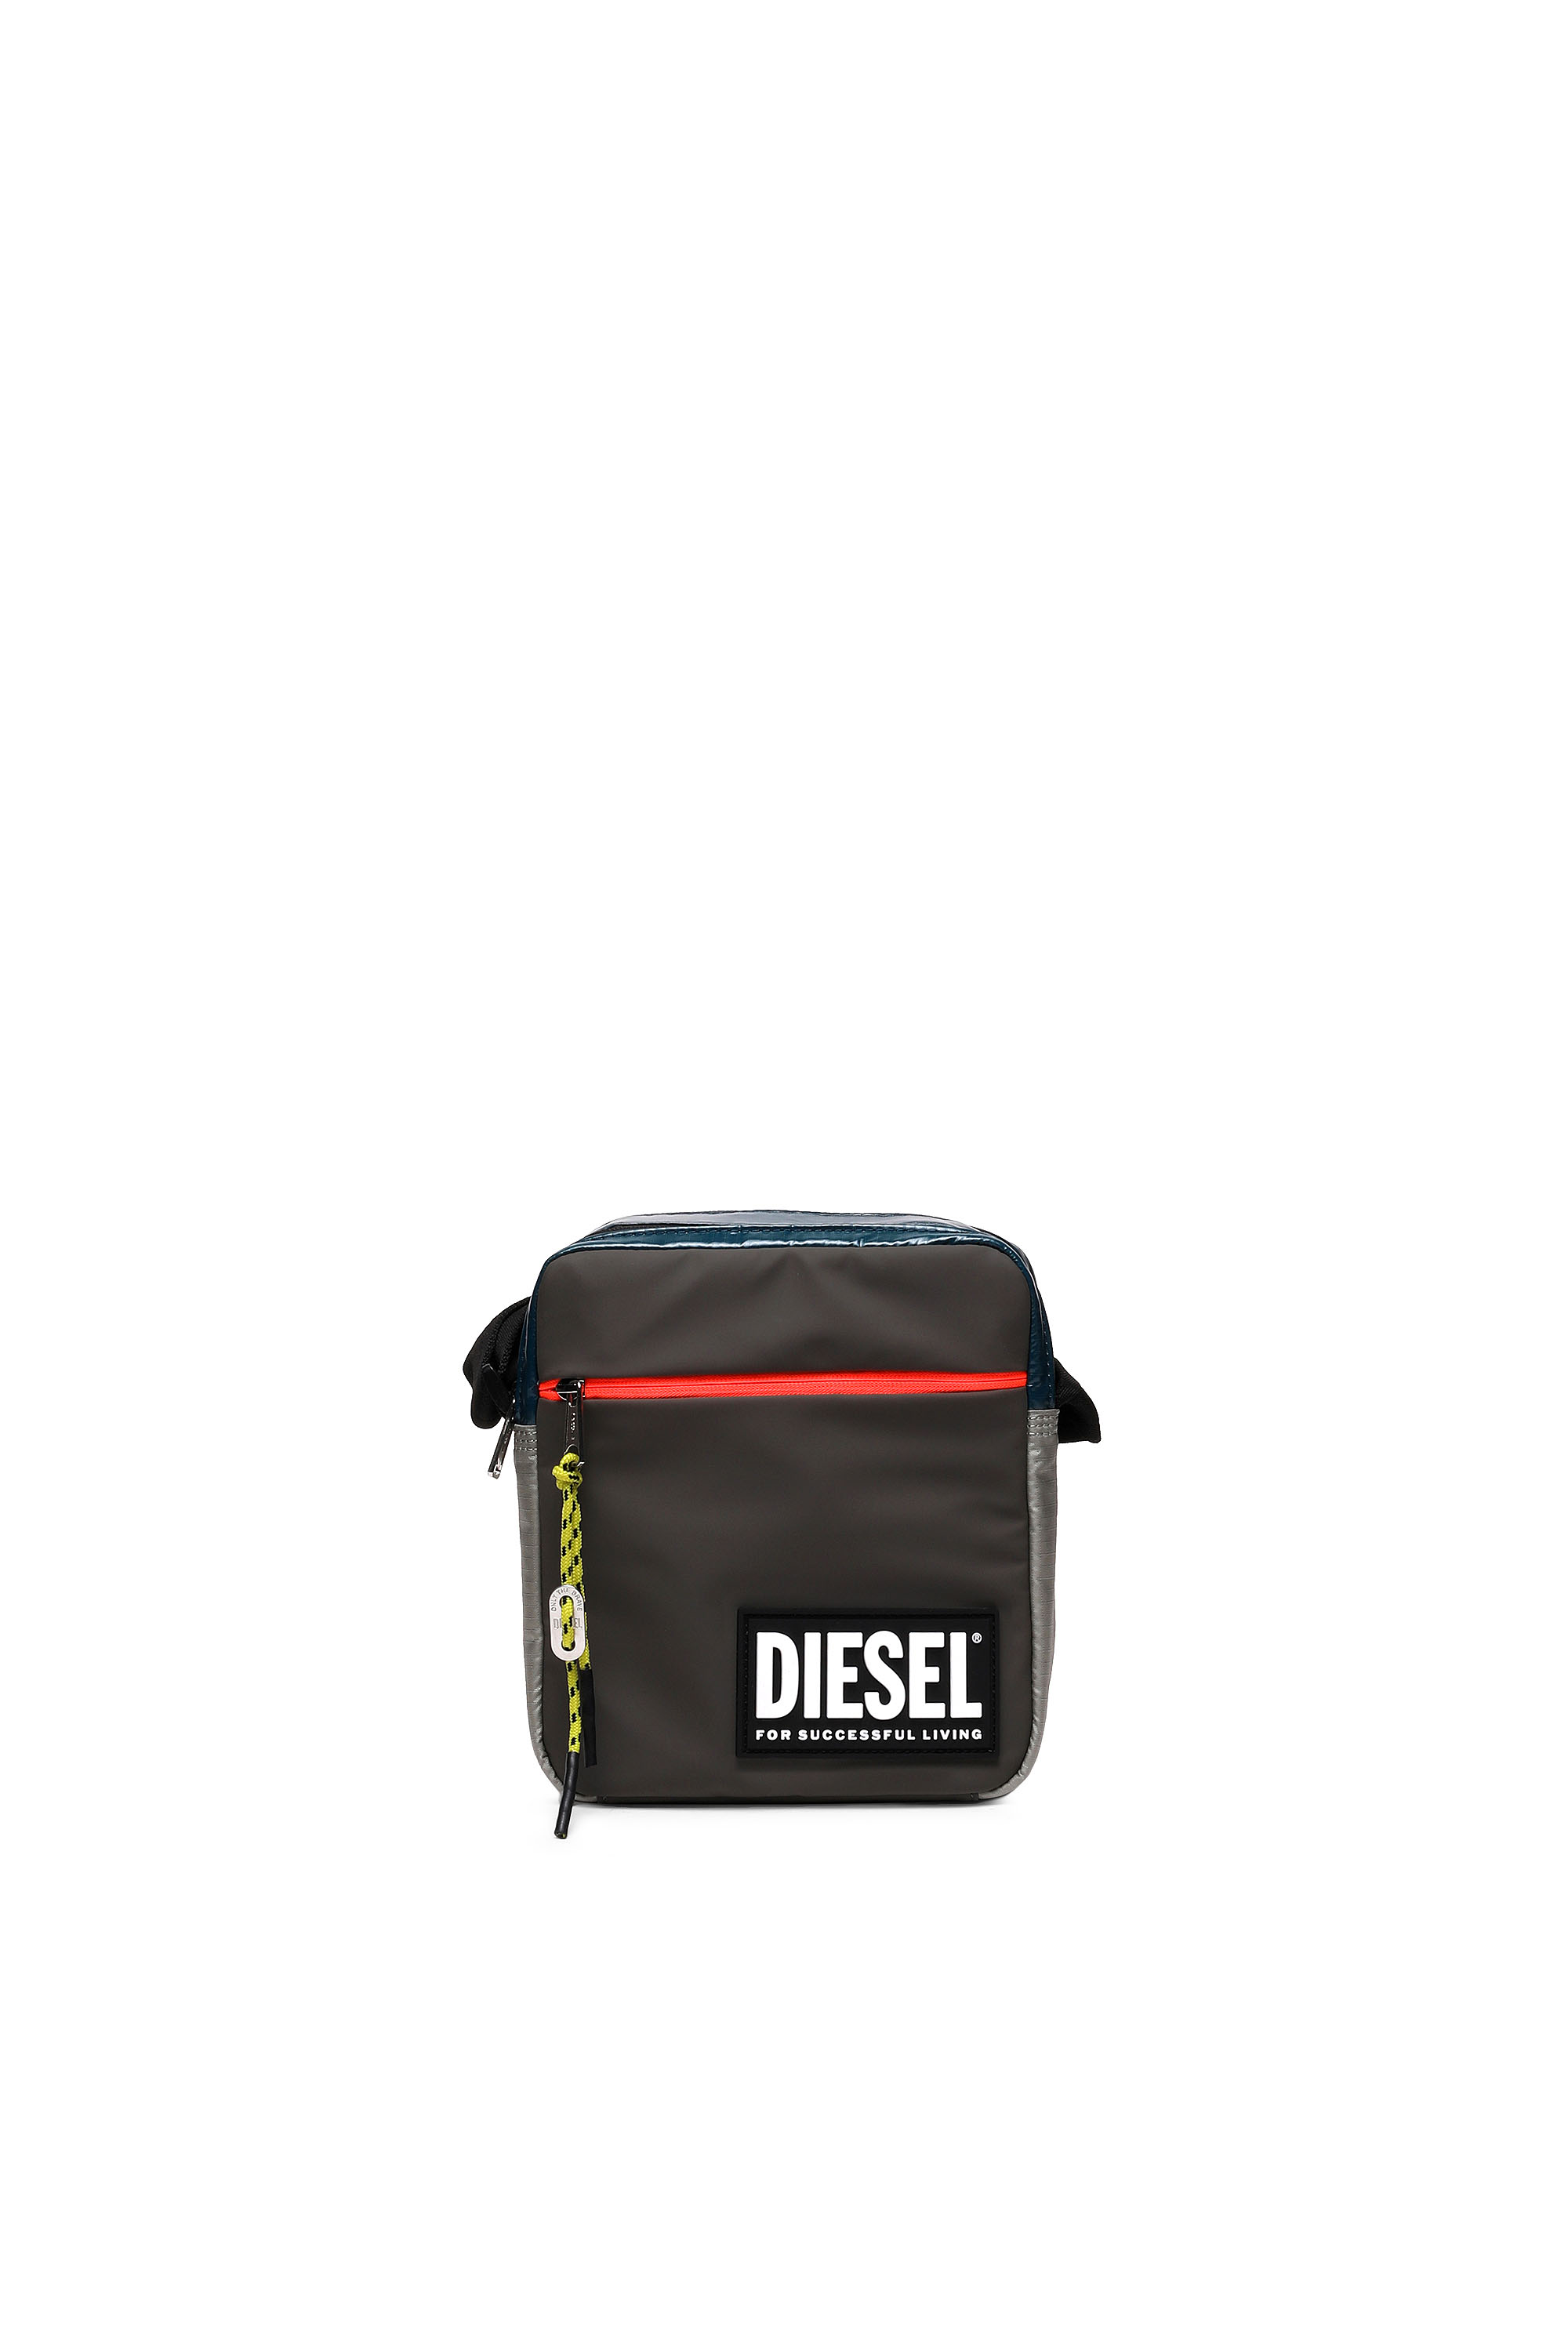 Diesel - VERTYO, Black - Image 1